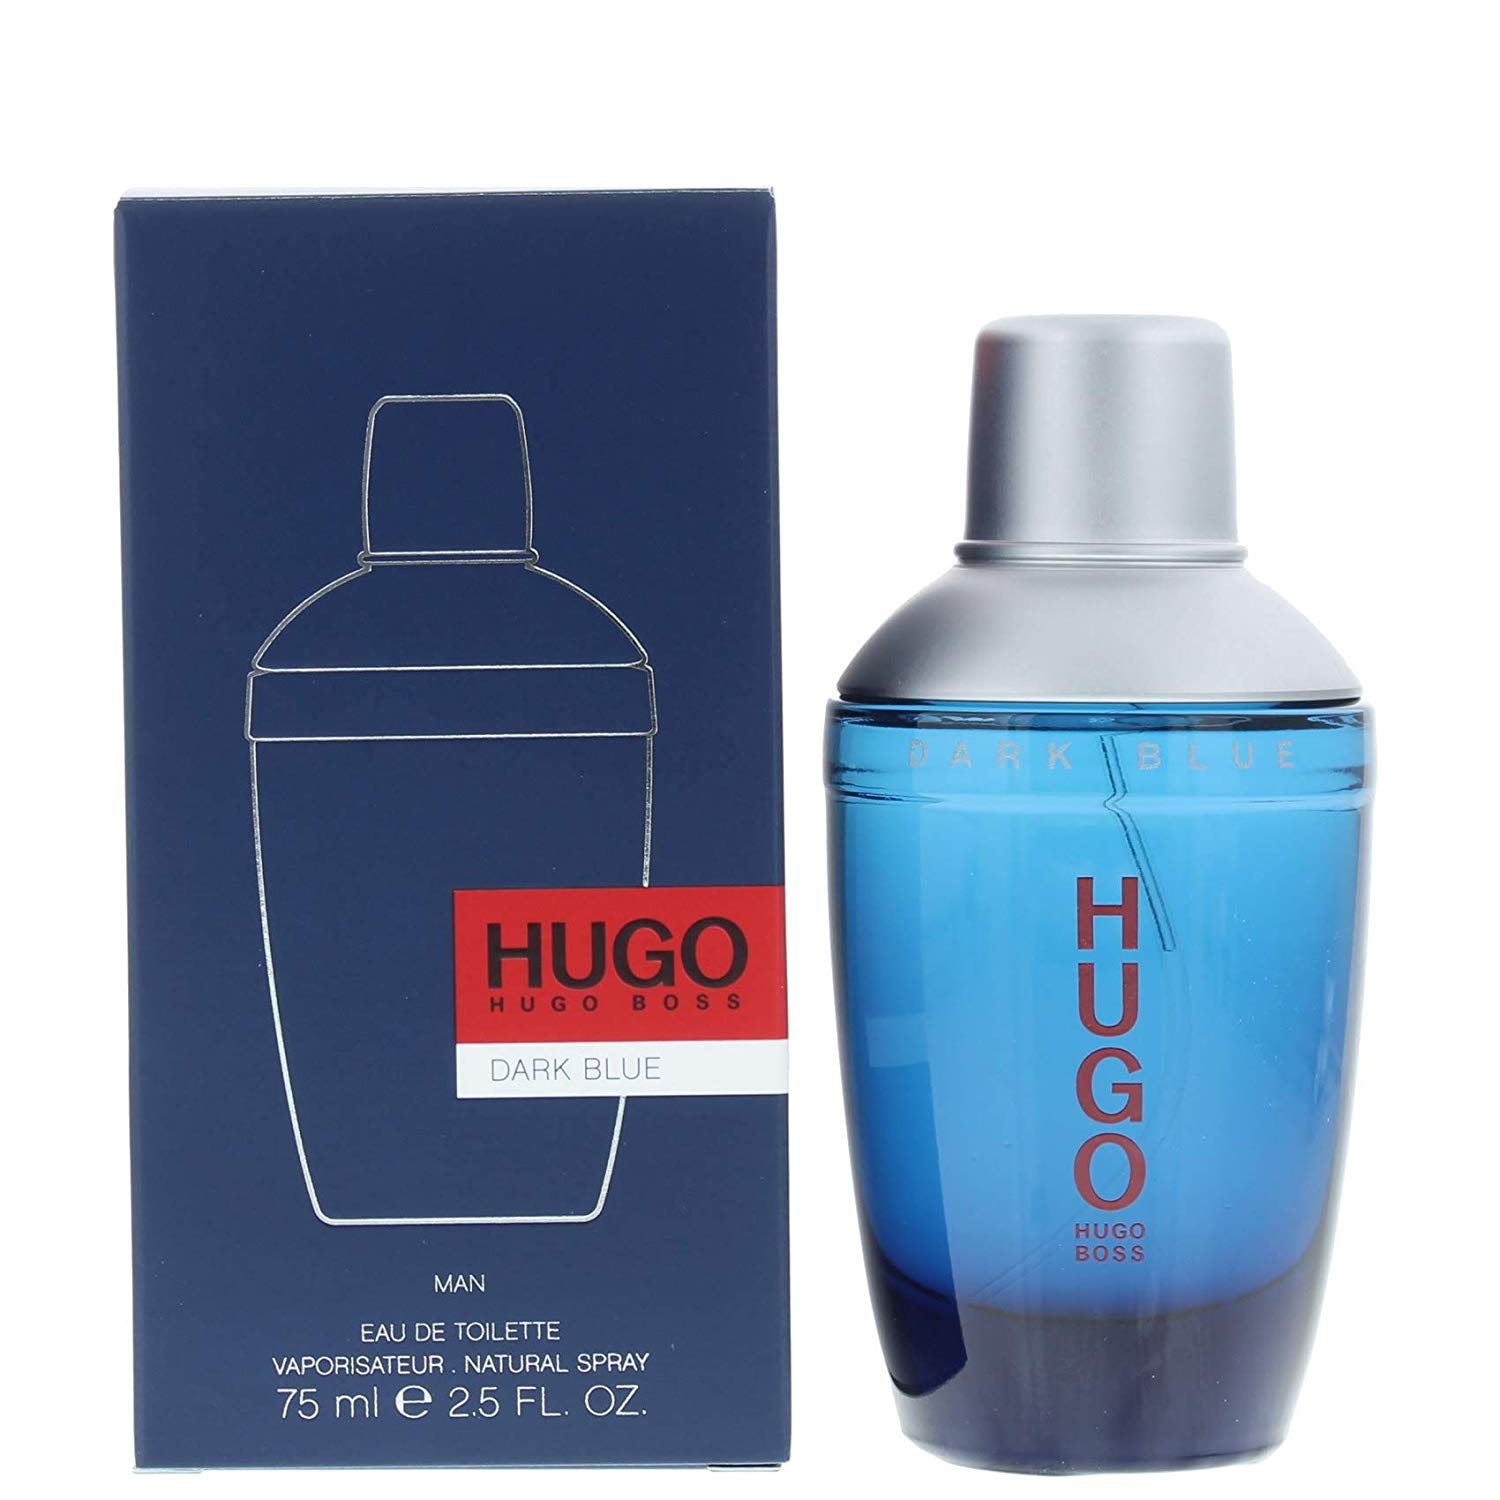 hugo boss dark blue man